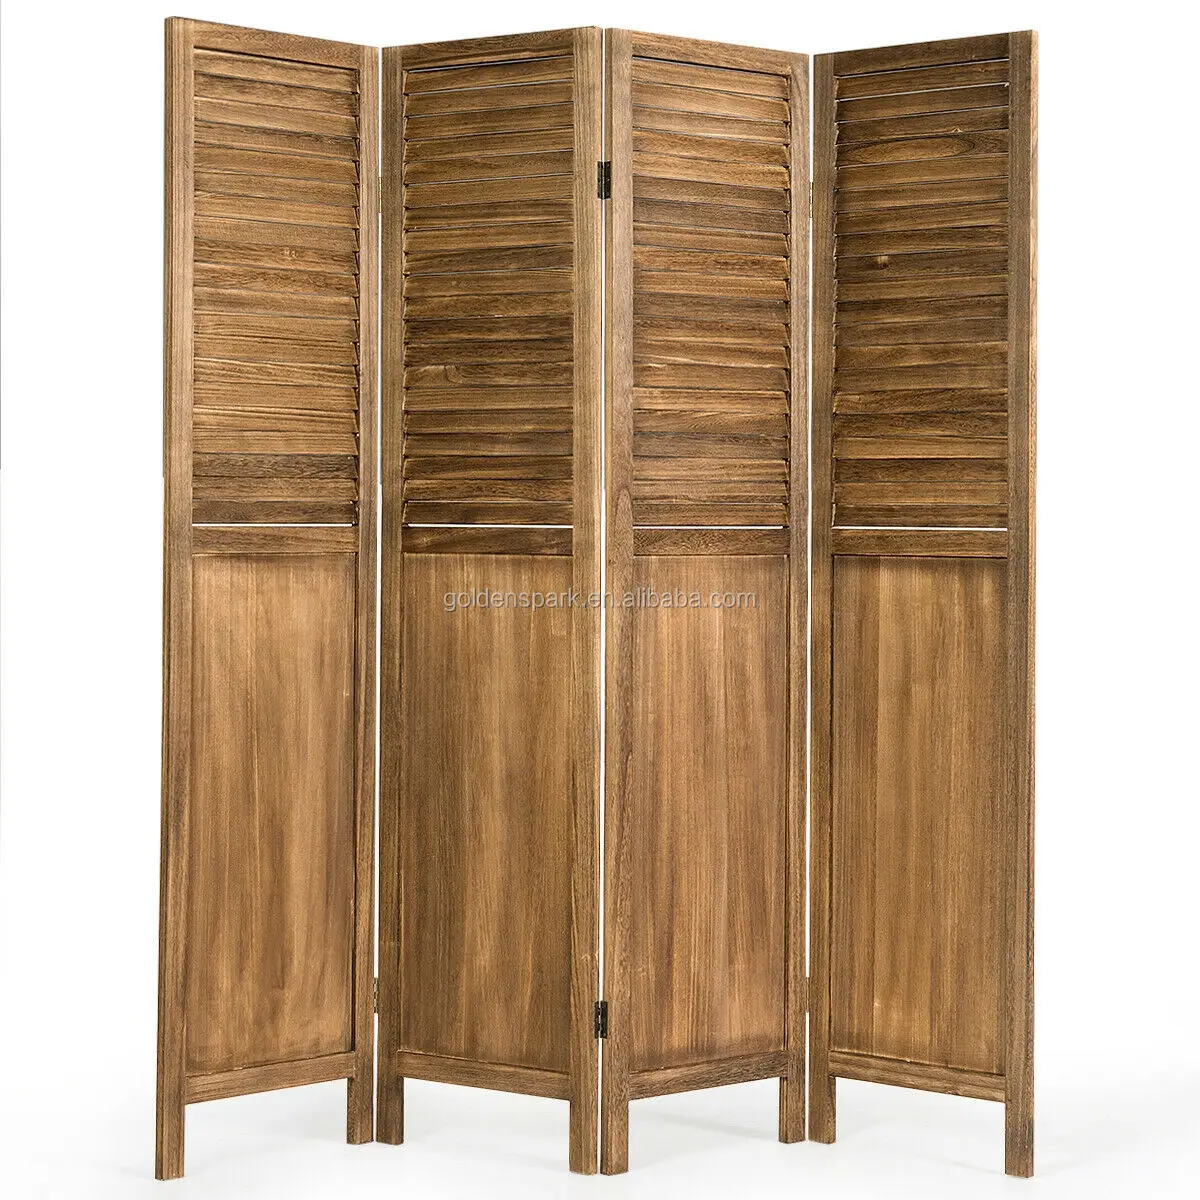 4 Panel independiente plegable de privacidad de moderno diseño de madera habitación divisor